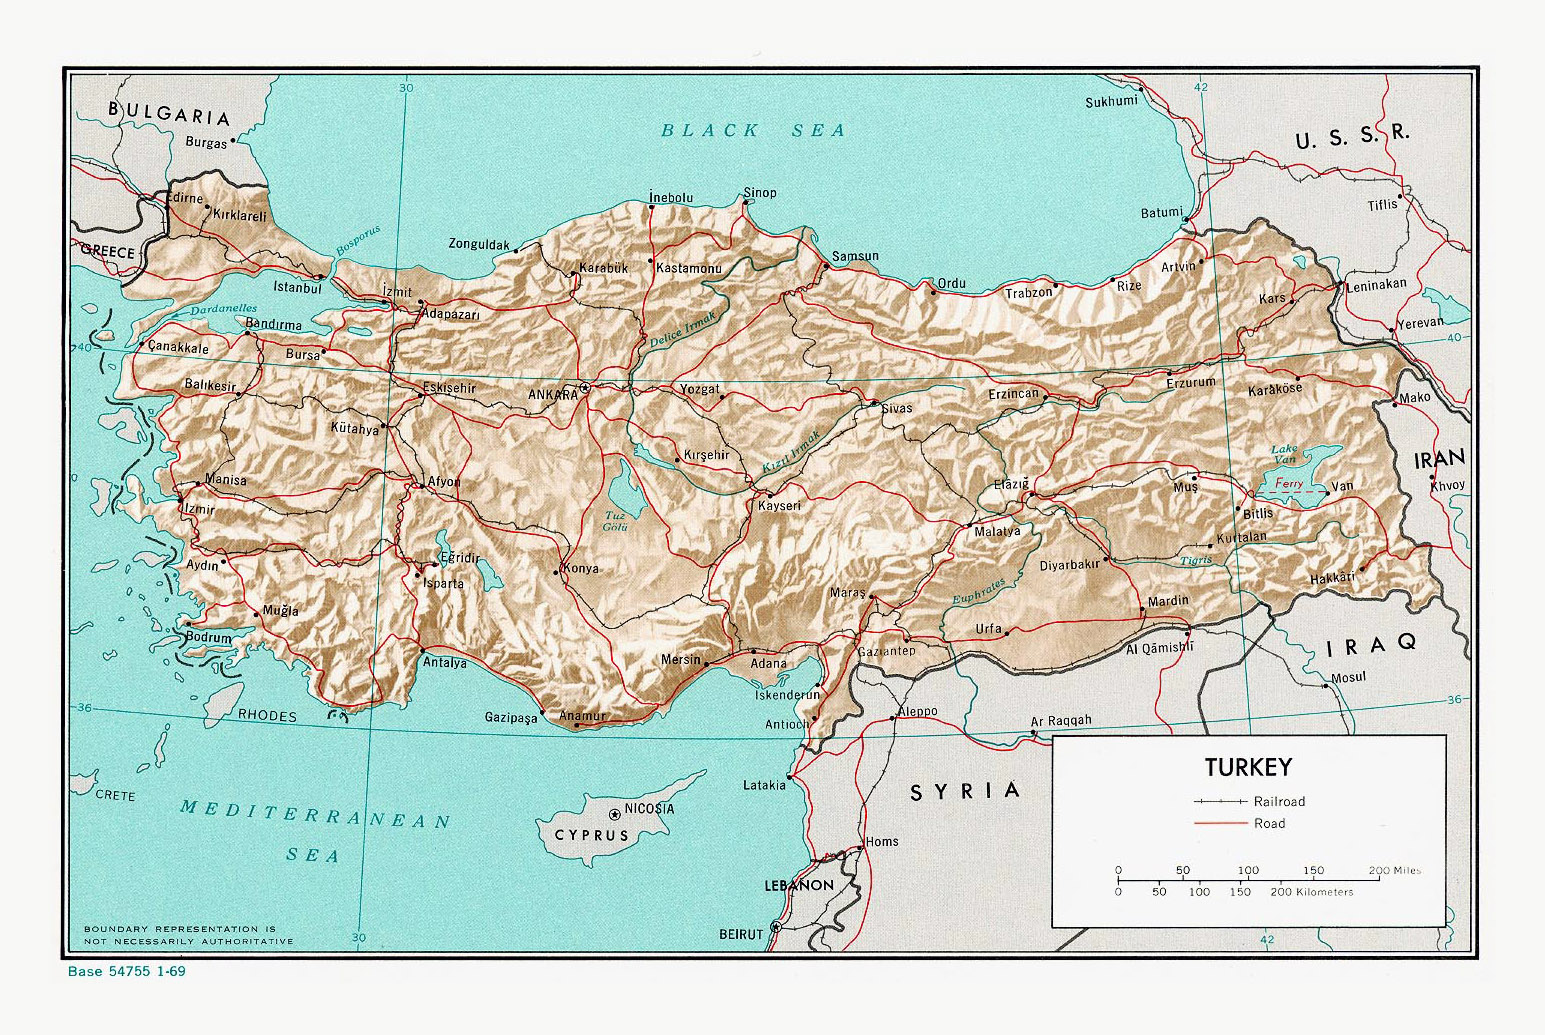 Большая политическая карта Турции с рельефом, дорогами, железными дорогамии крупными городами - 1969